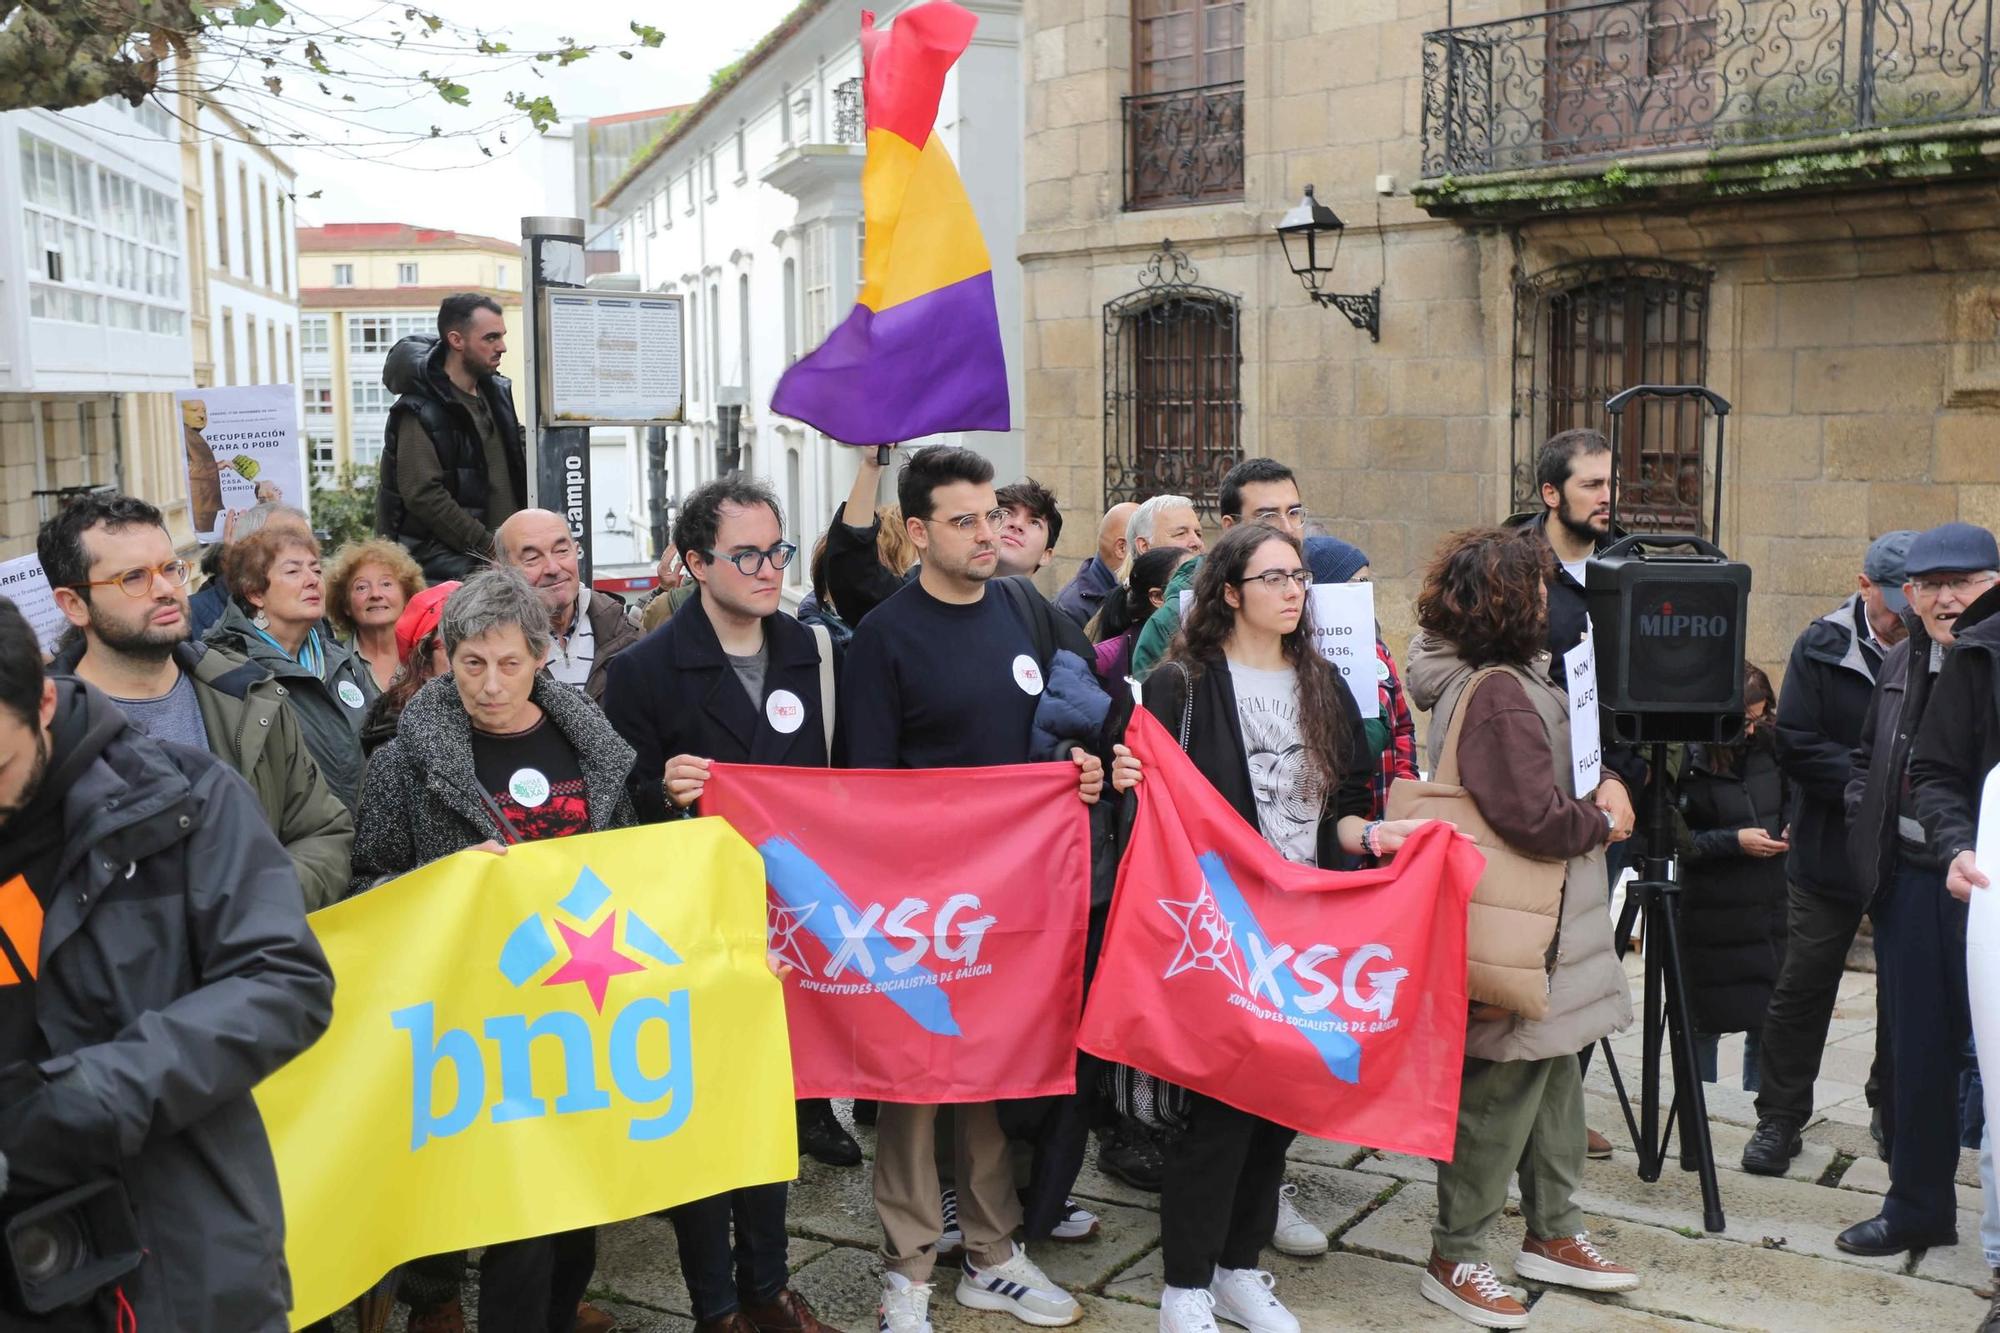 Protesta en A Coruña para reclamar la devolución de la Casa Cornide: "Franquismo nunca más"